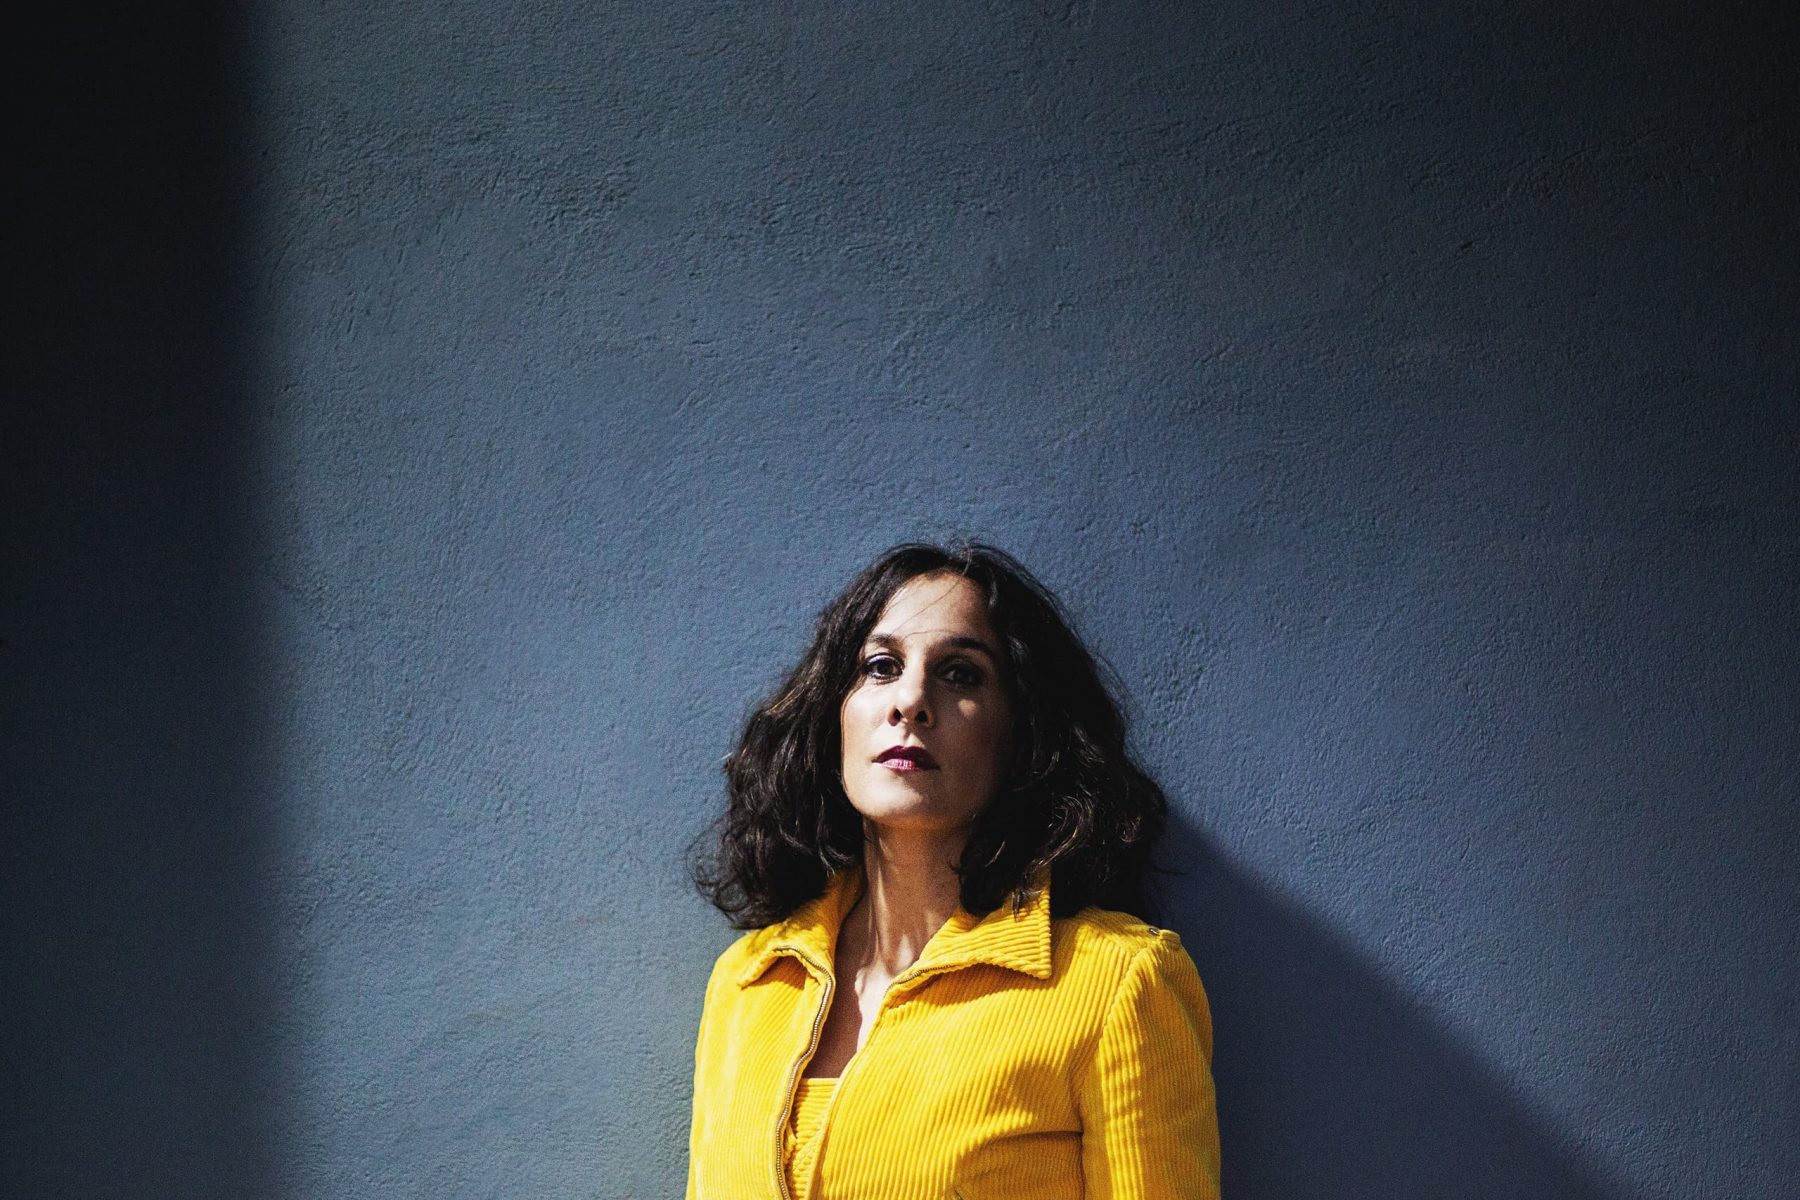 Porträt einer Frau mit schulterlangen dunklen Haaren und einer gelben Jacke vor einer dunkelblauen Wand.